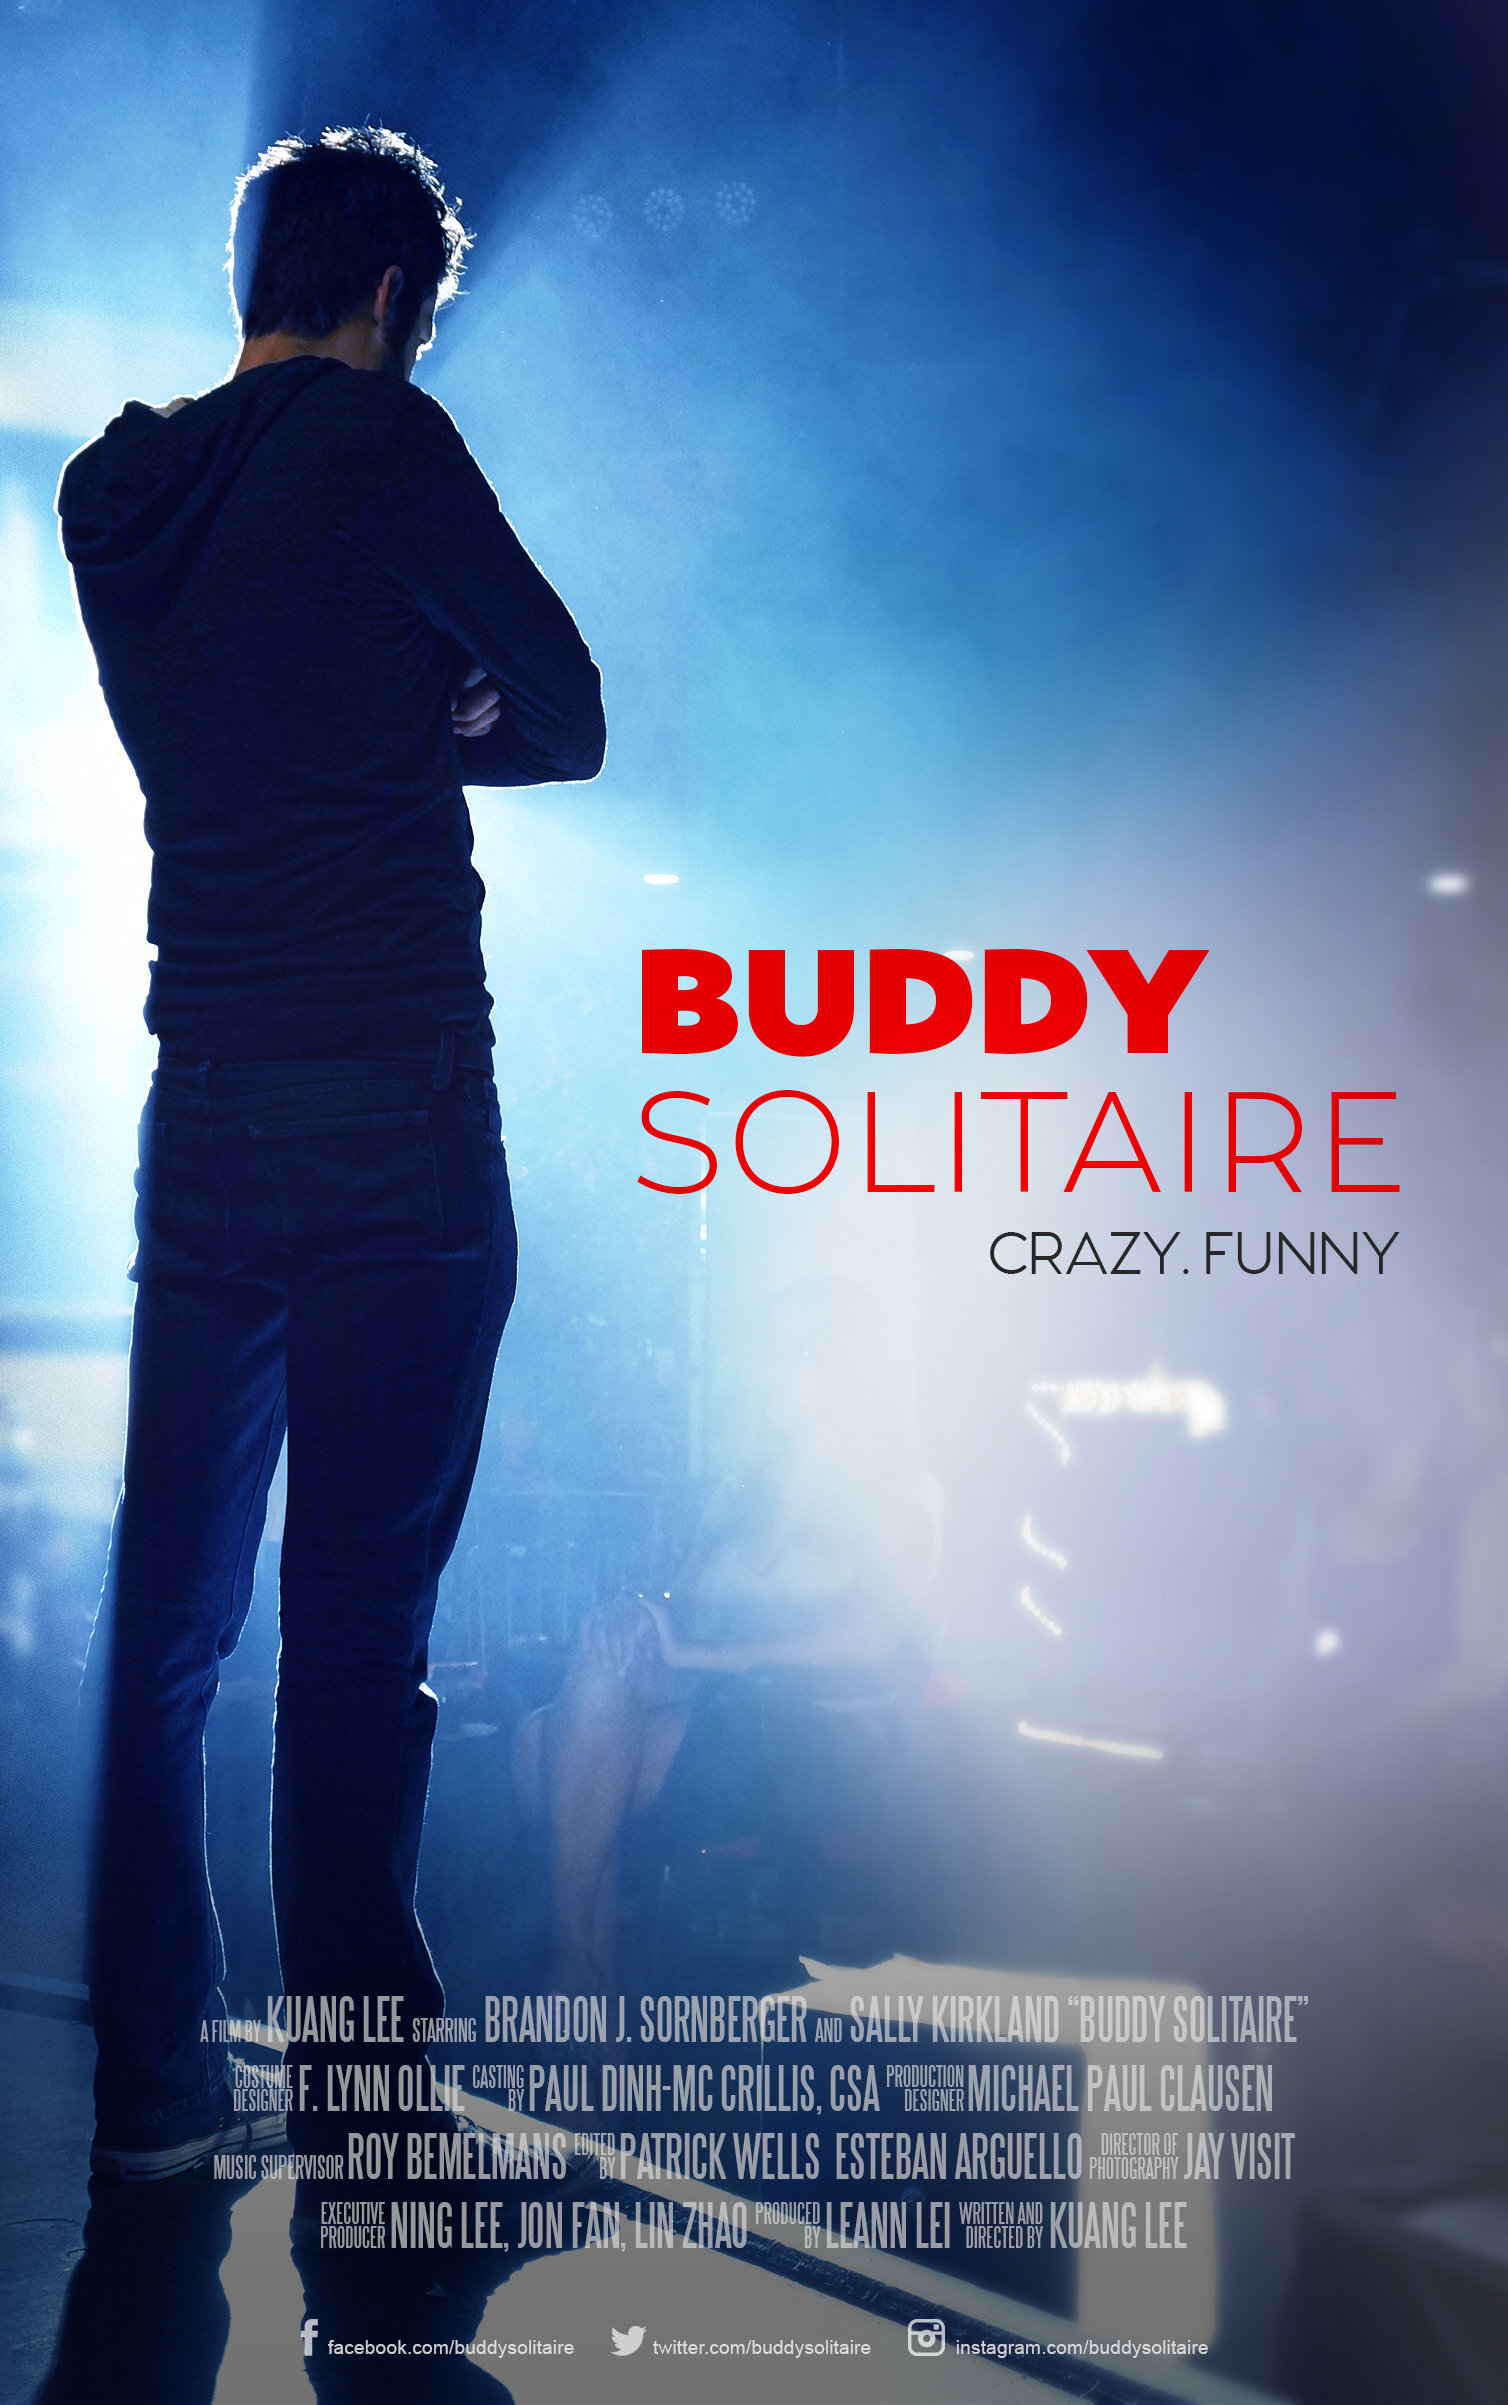 Nonton film Buddy Solitaire layarkaca21 indoxx1 ganool online streaming terbaru